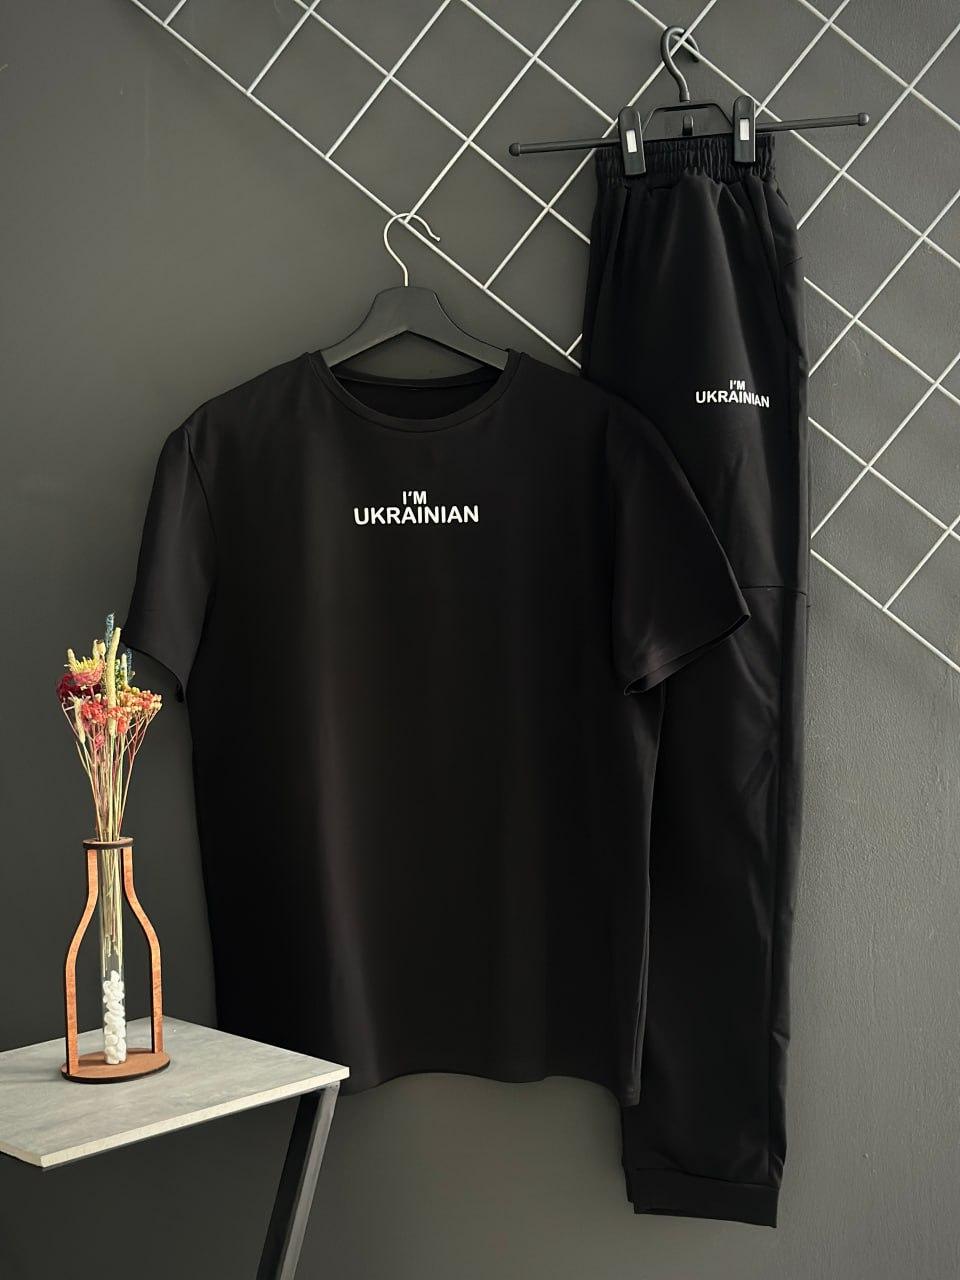 Чоловічий спортивний костюм лого I'm Ukrainian, штани та футболка чорні. XL